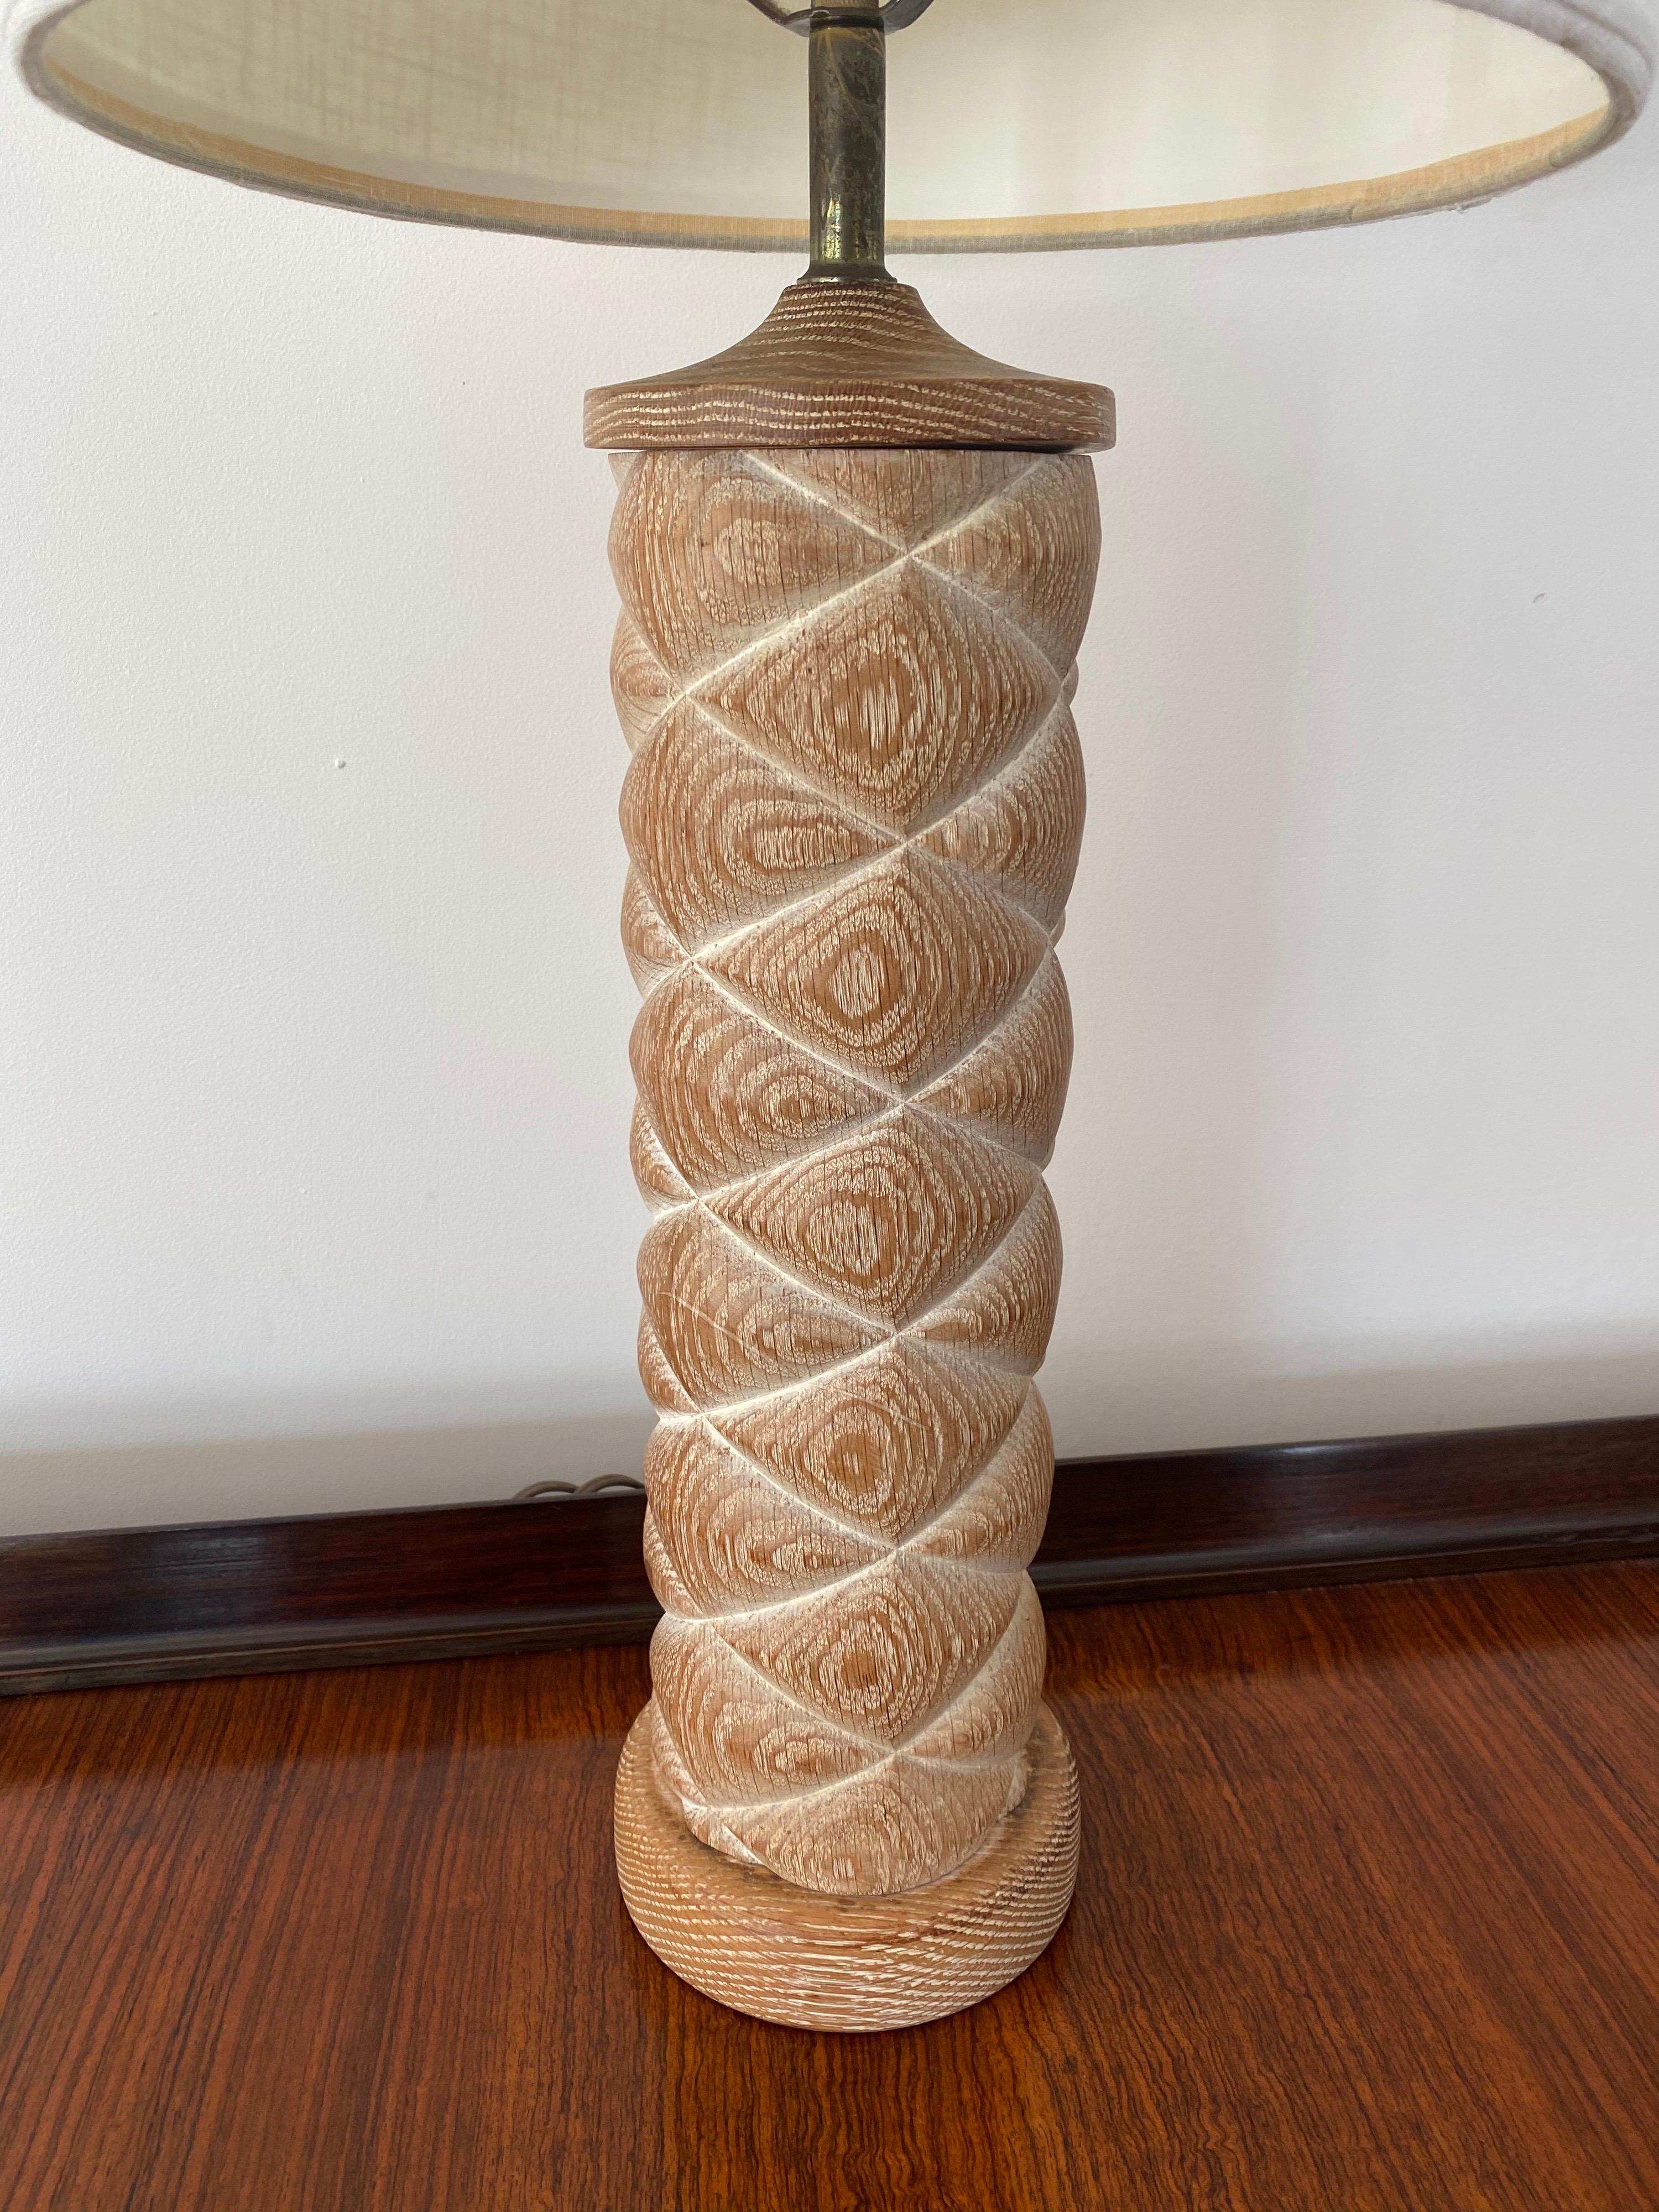 Une lampe de table française cylindrique en chêne cérusé. Comprend une harpe et un fleuron coordonnés.

L'ombre est destinée à être exposée. La lampe mesure 32,5 po de haut, y compris la harpe et le fleuron, et 21 po de haut jusqu'au sommet de la